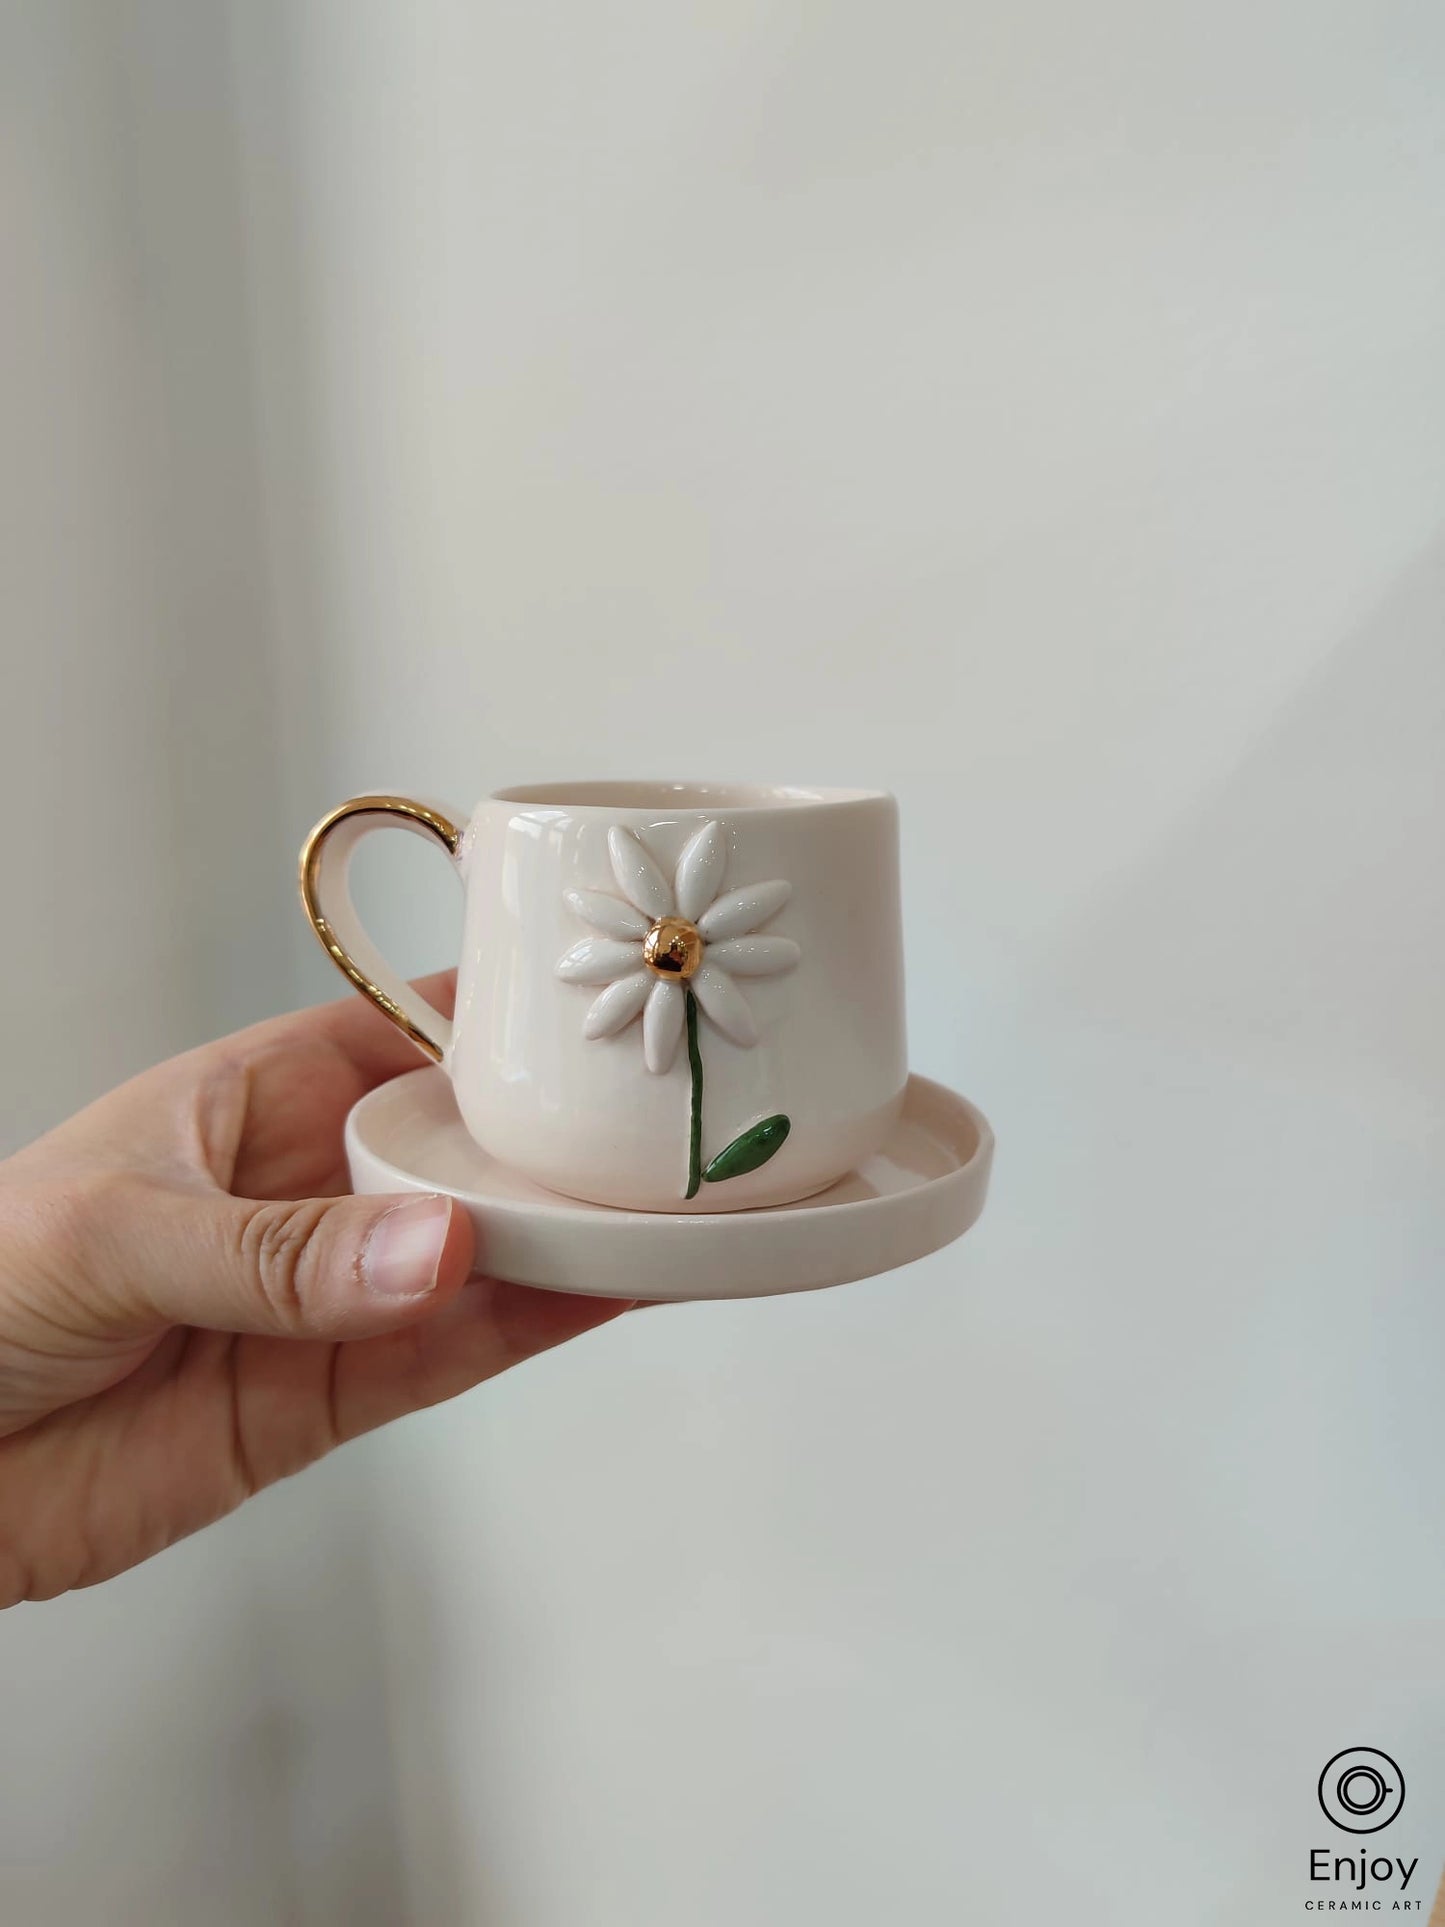 Tea Cup and Saucer Gift Box 5 oz